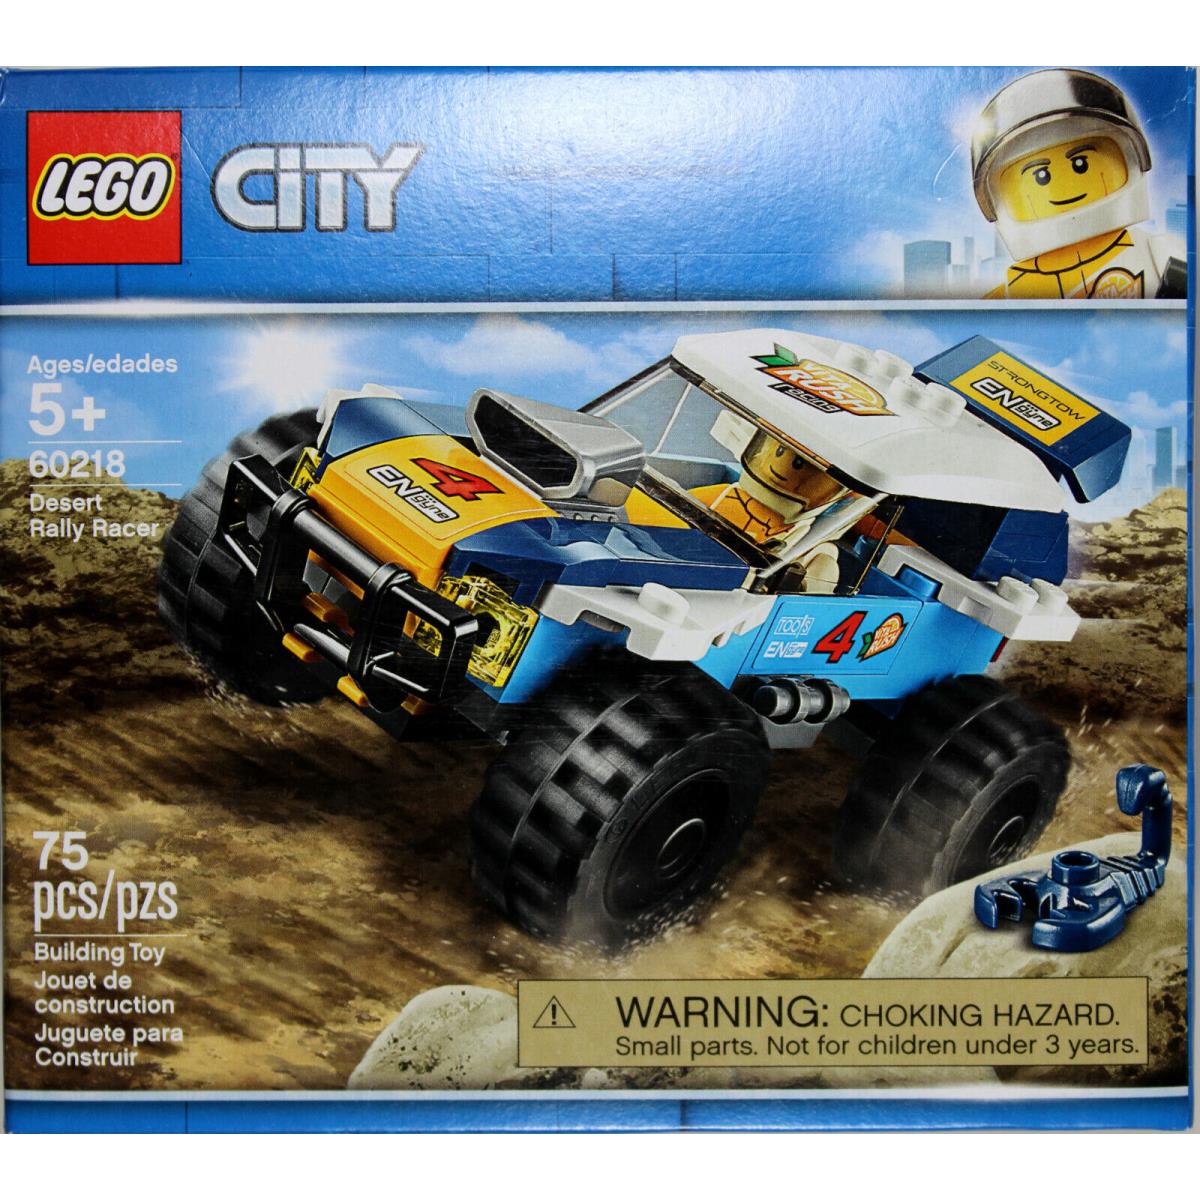 Lego City Desert Rally Racer Set 60218